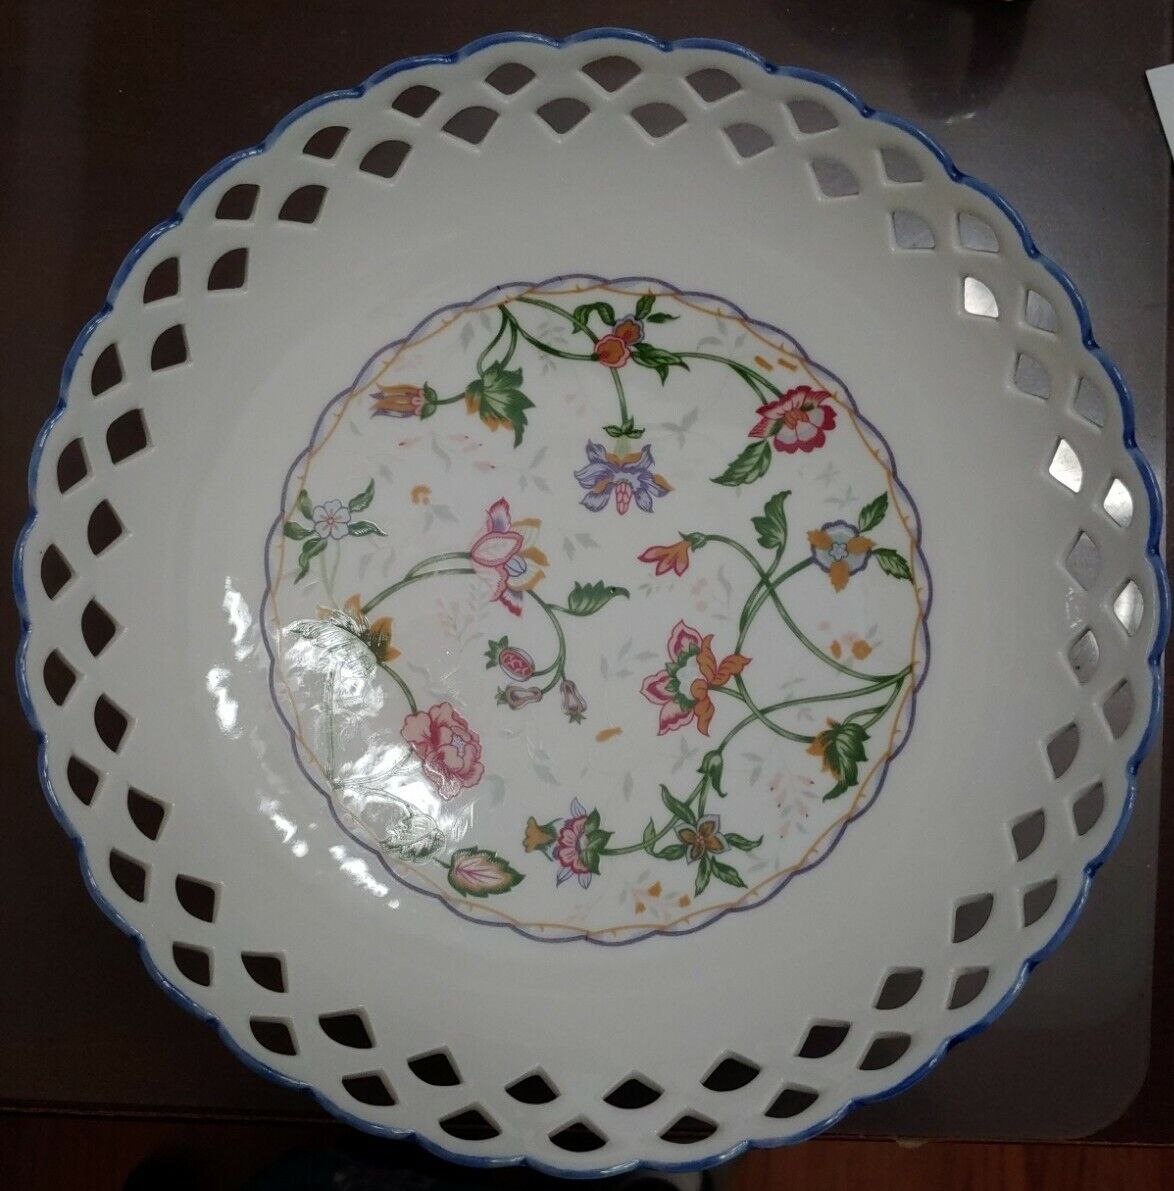 Decorative Porcelain Cabinet Plate Lattice Rim Floral Motif Collectible Platter